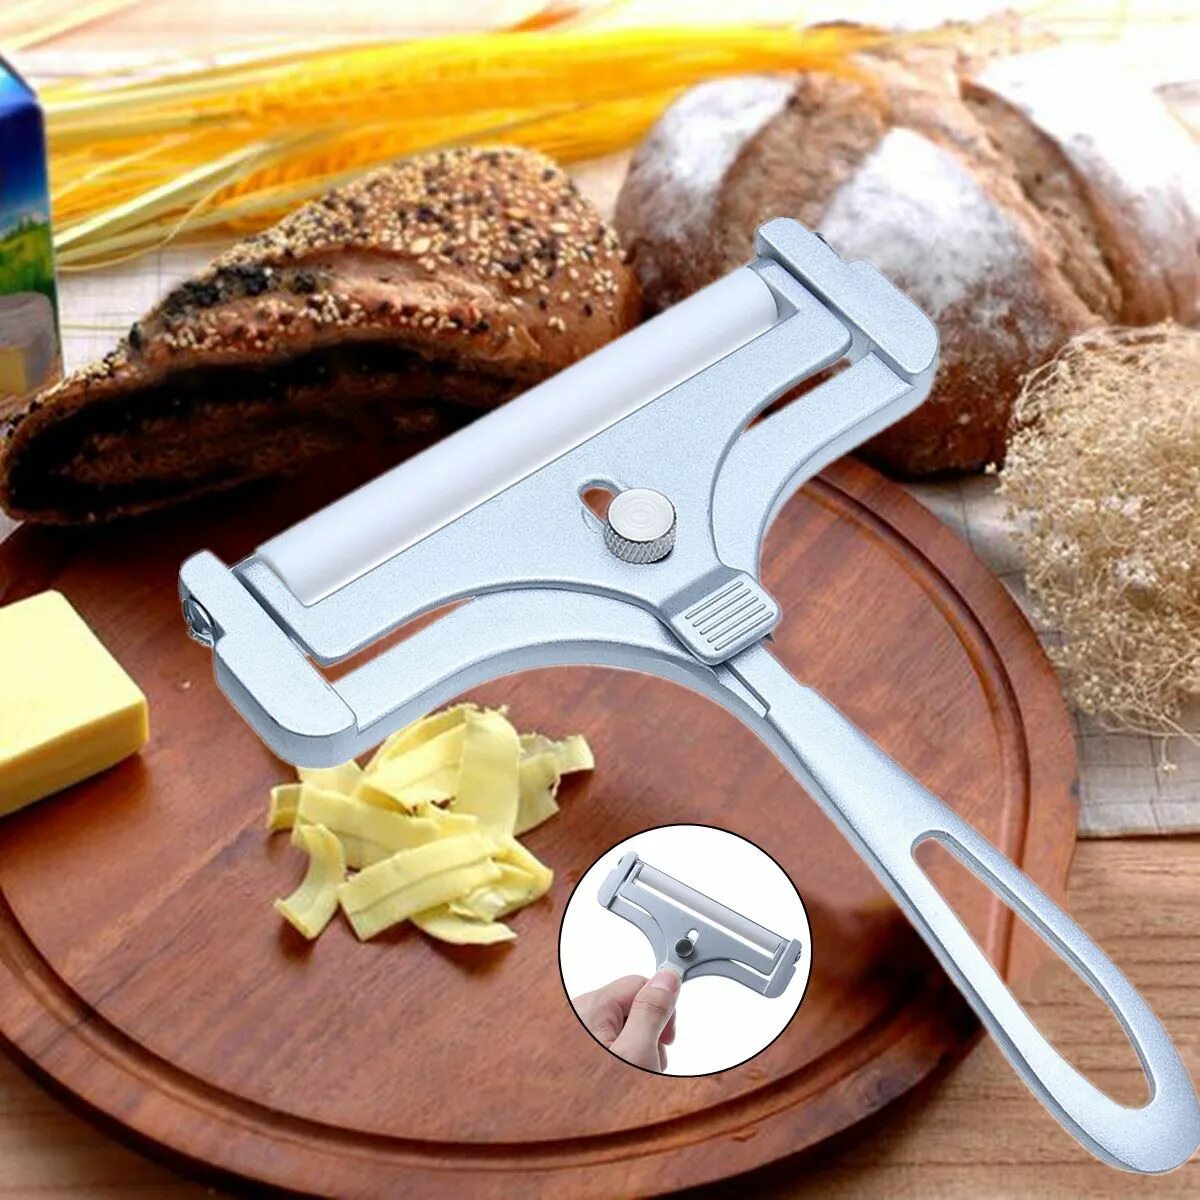 Сырорезка слайсер. Нож для нарезки сыра. Прибор для нарезки сыра. Нож слайсер для нарезки сыра. Слайсер для сыра купить